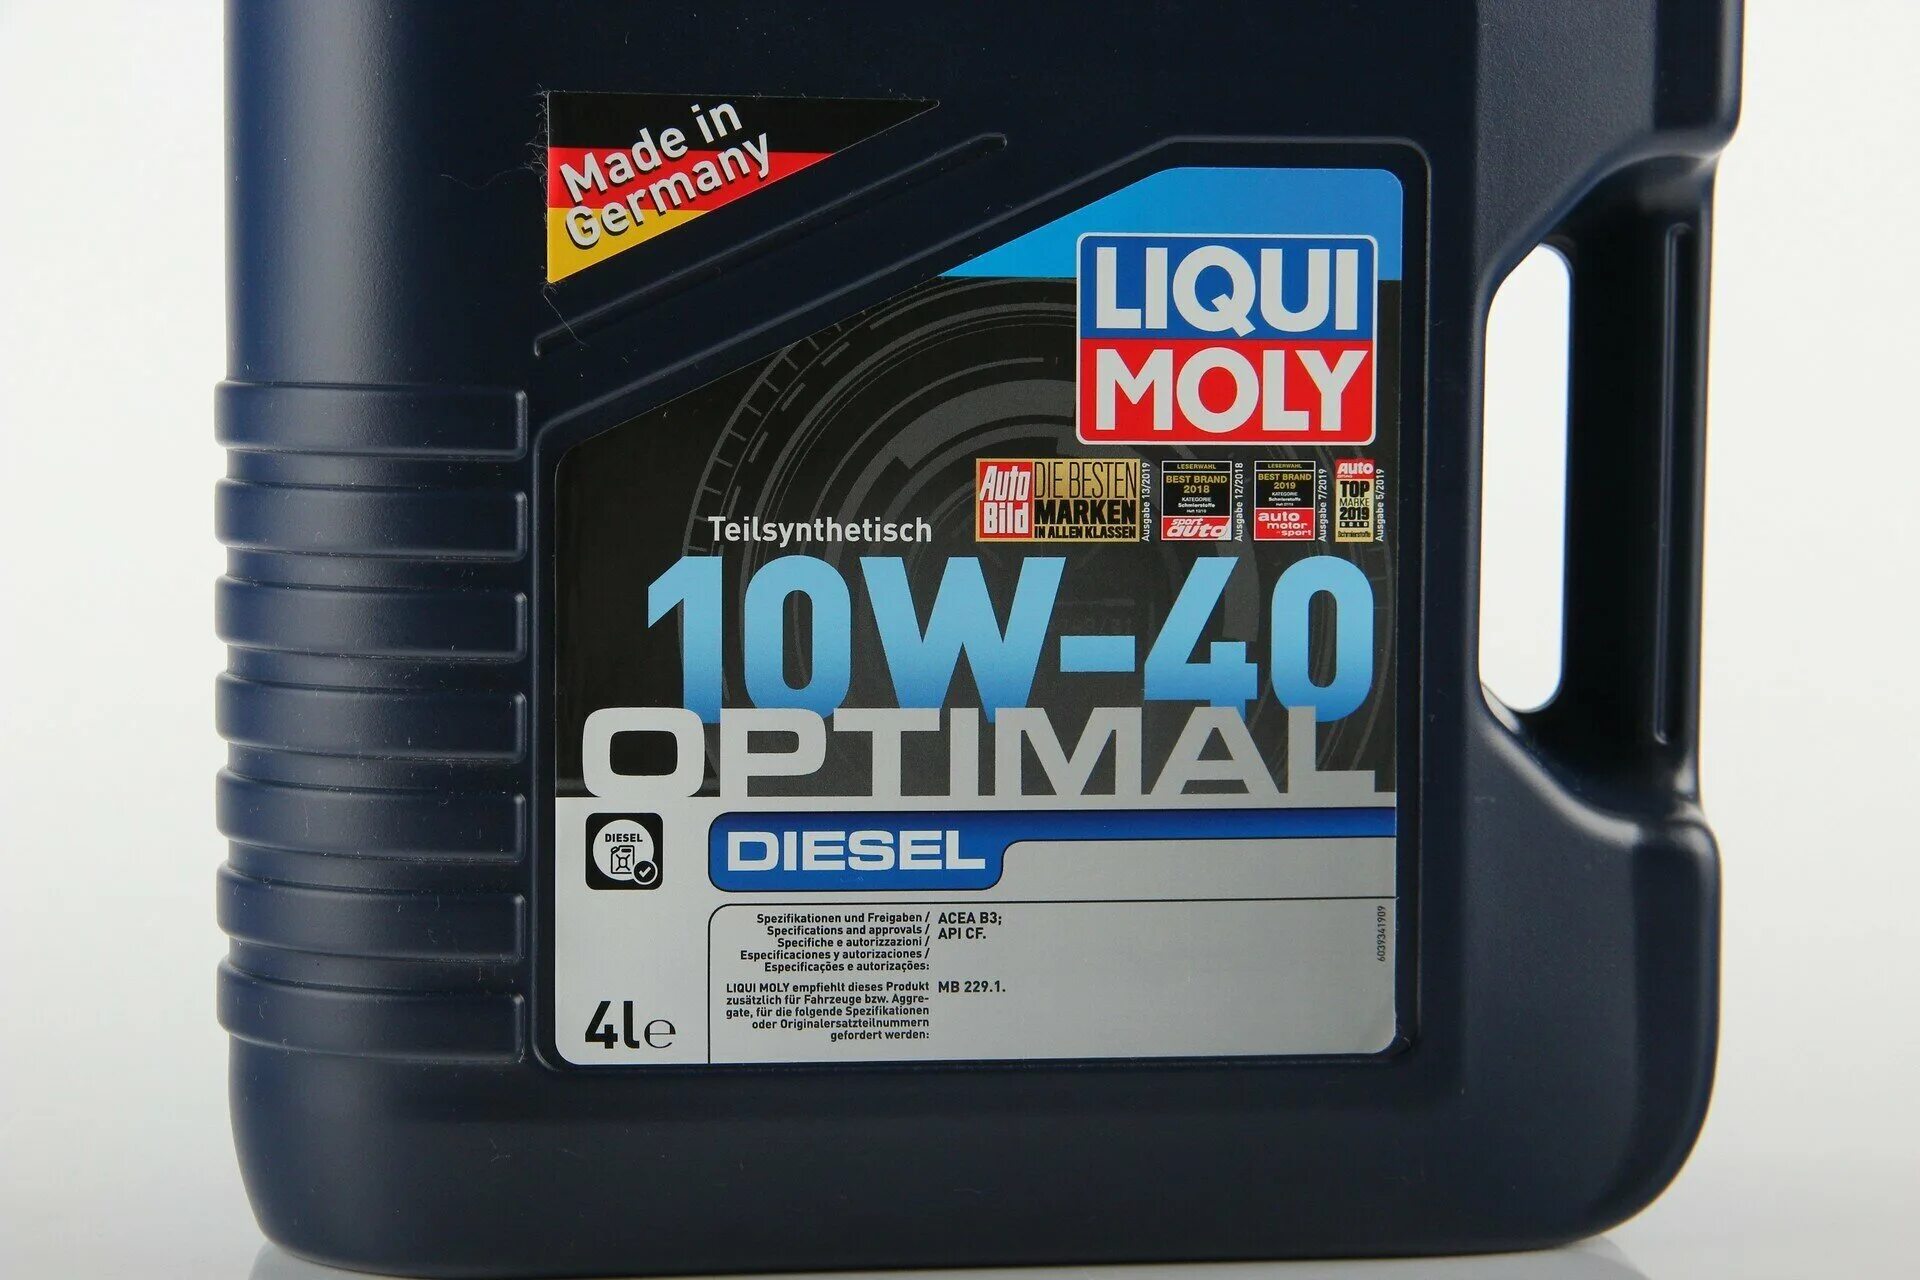 Масло ликви моли дизель. Моторное масло Liqui Moly 10w 40 OPTIMAL Diesel. 3934 Liqui Moly. Моторное масло Liqui Moly 20w 50 OPTIMAL Diesel. 3055 Liqui Moly.